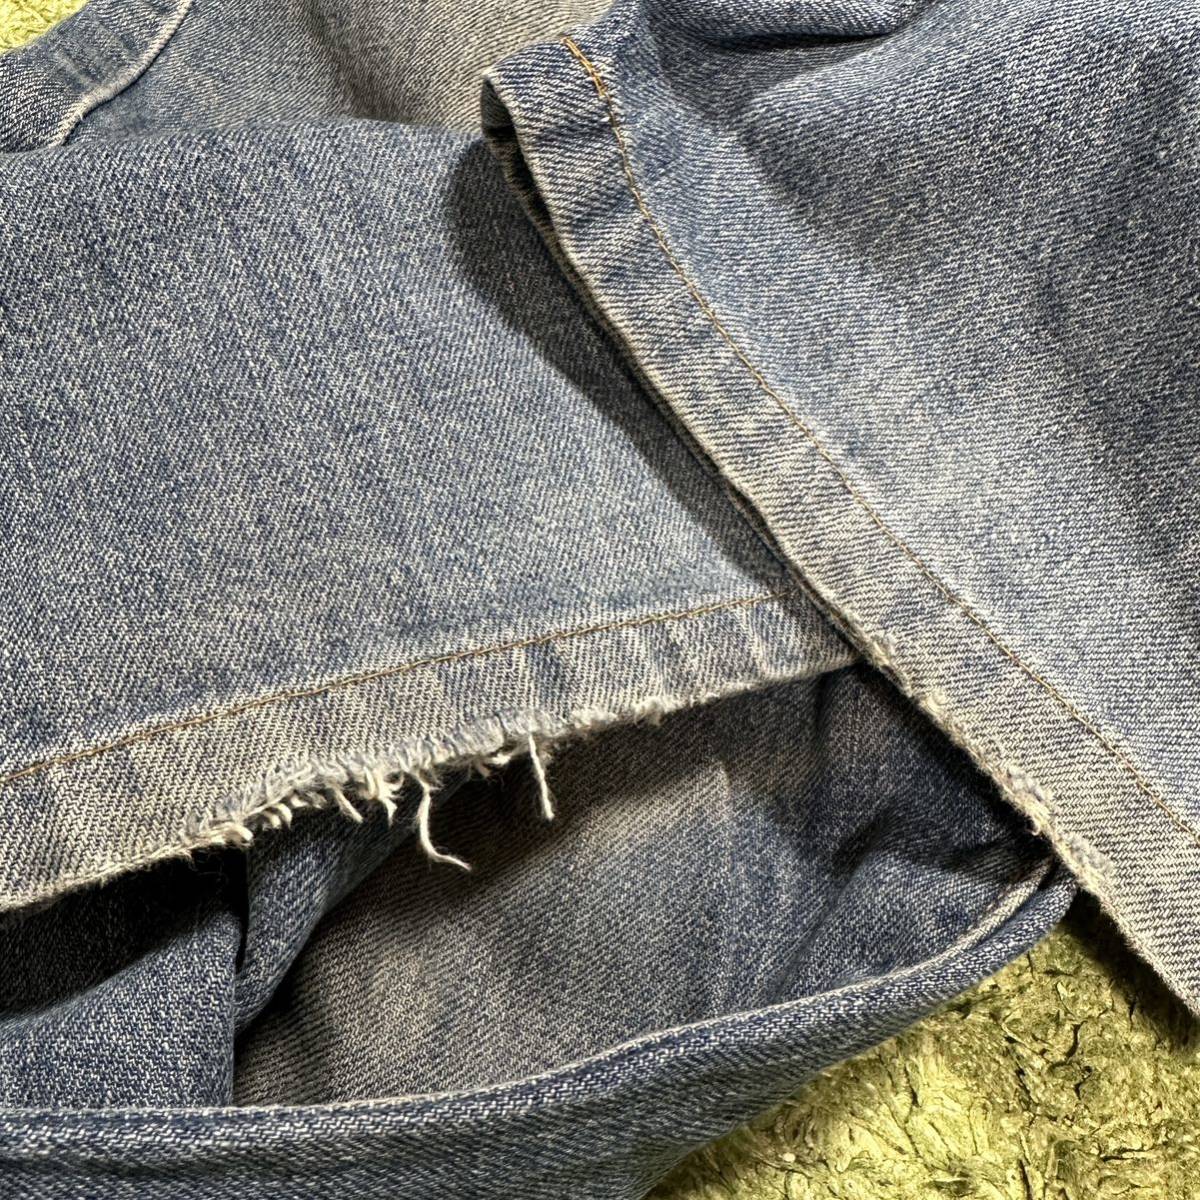 Kenzo jeans Kenzo джинсы Denim гора Фудзи стежок 85cm Vintage сделано в Японии 